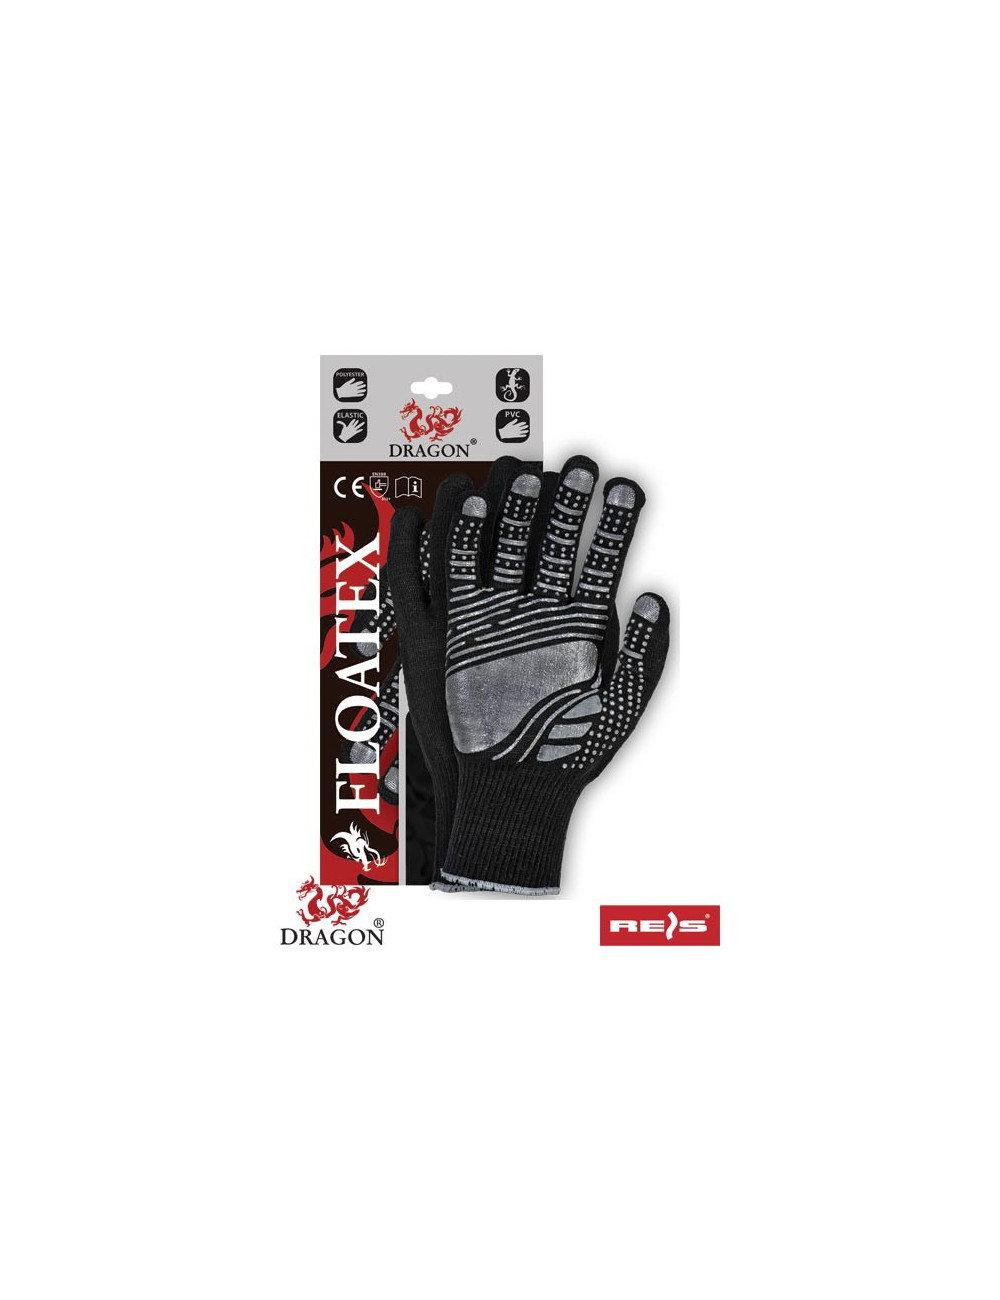 Protective gloves floatex bs black-grey Reis